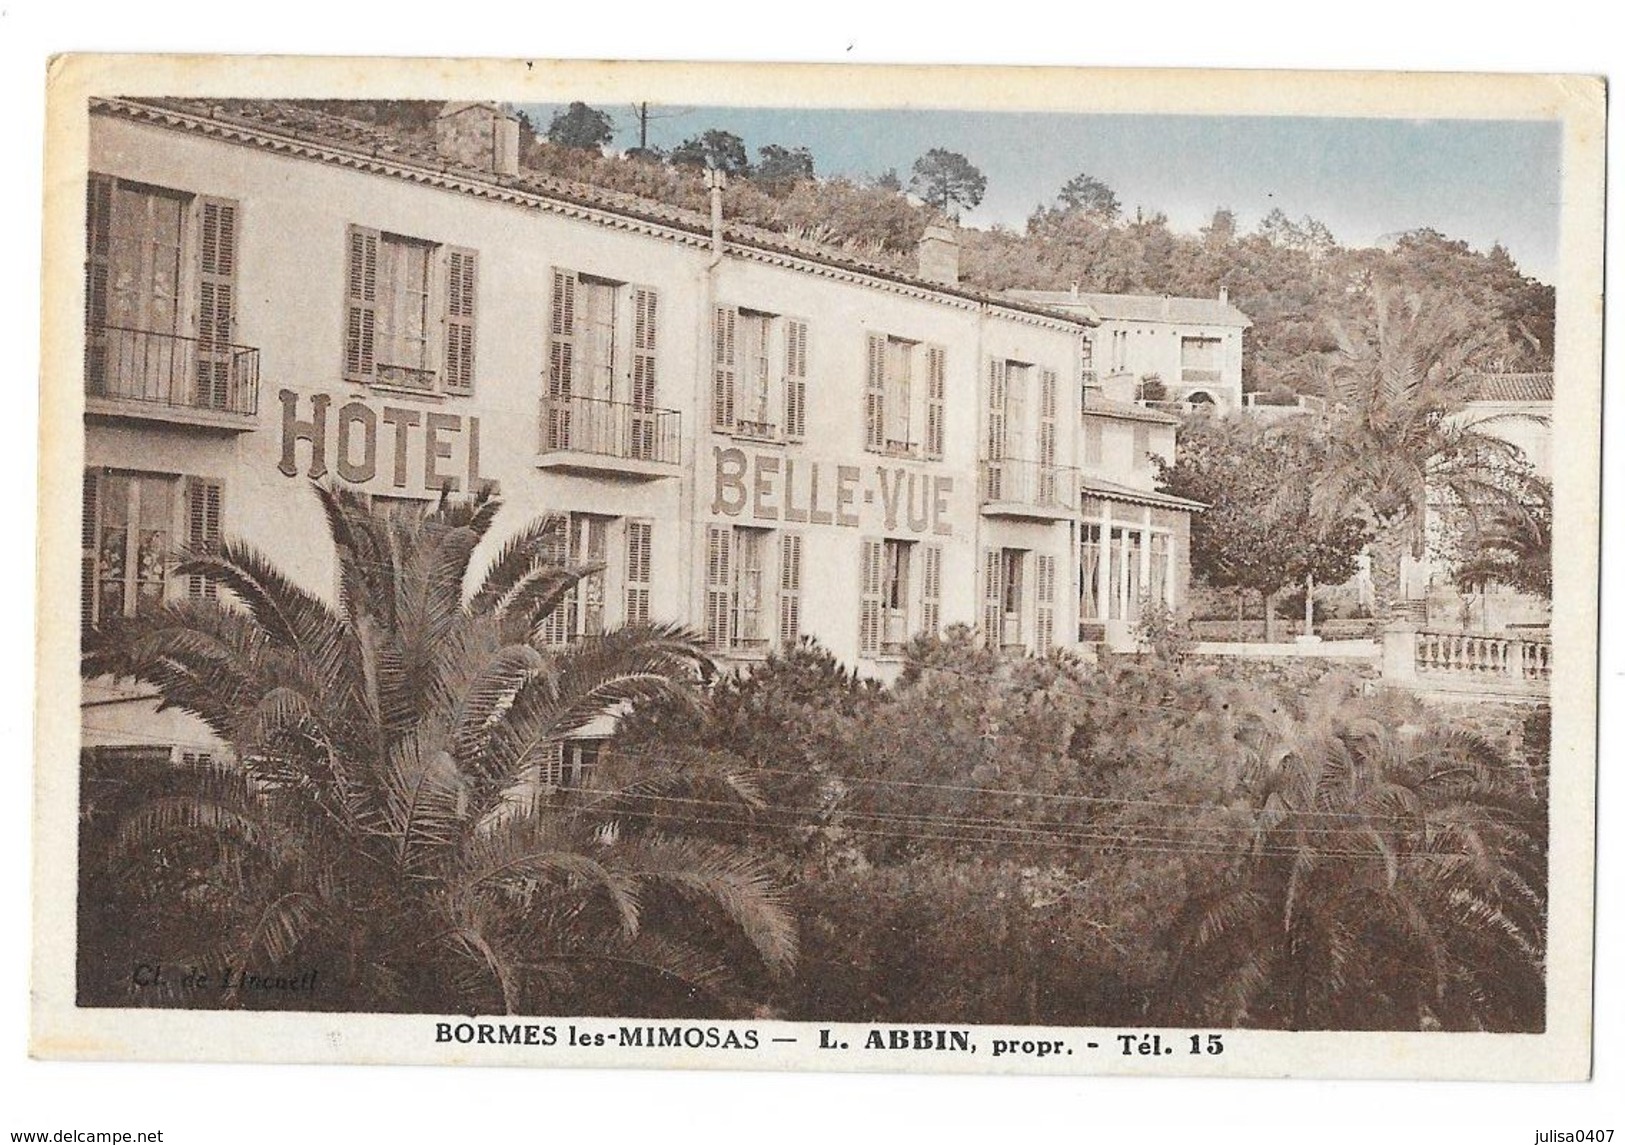 BORMES LES MIMOSAS (83) Hotel Belle Vue ABBIN Propriétaire - Bormes-les-Mimosas